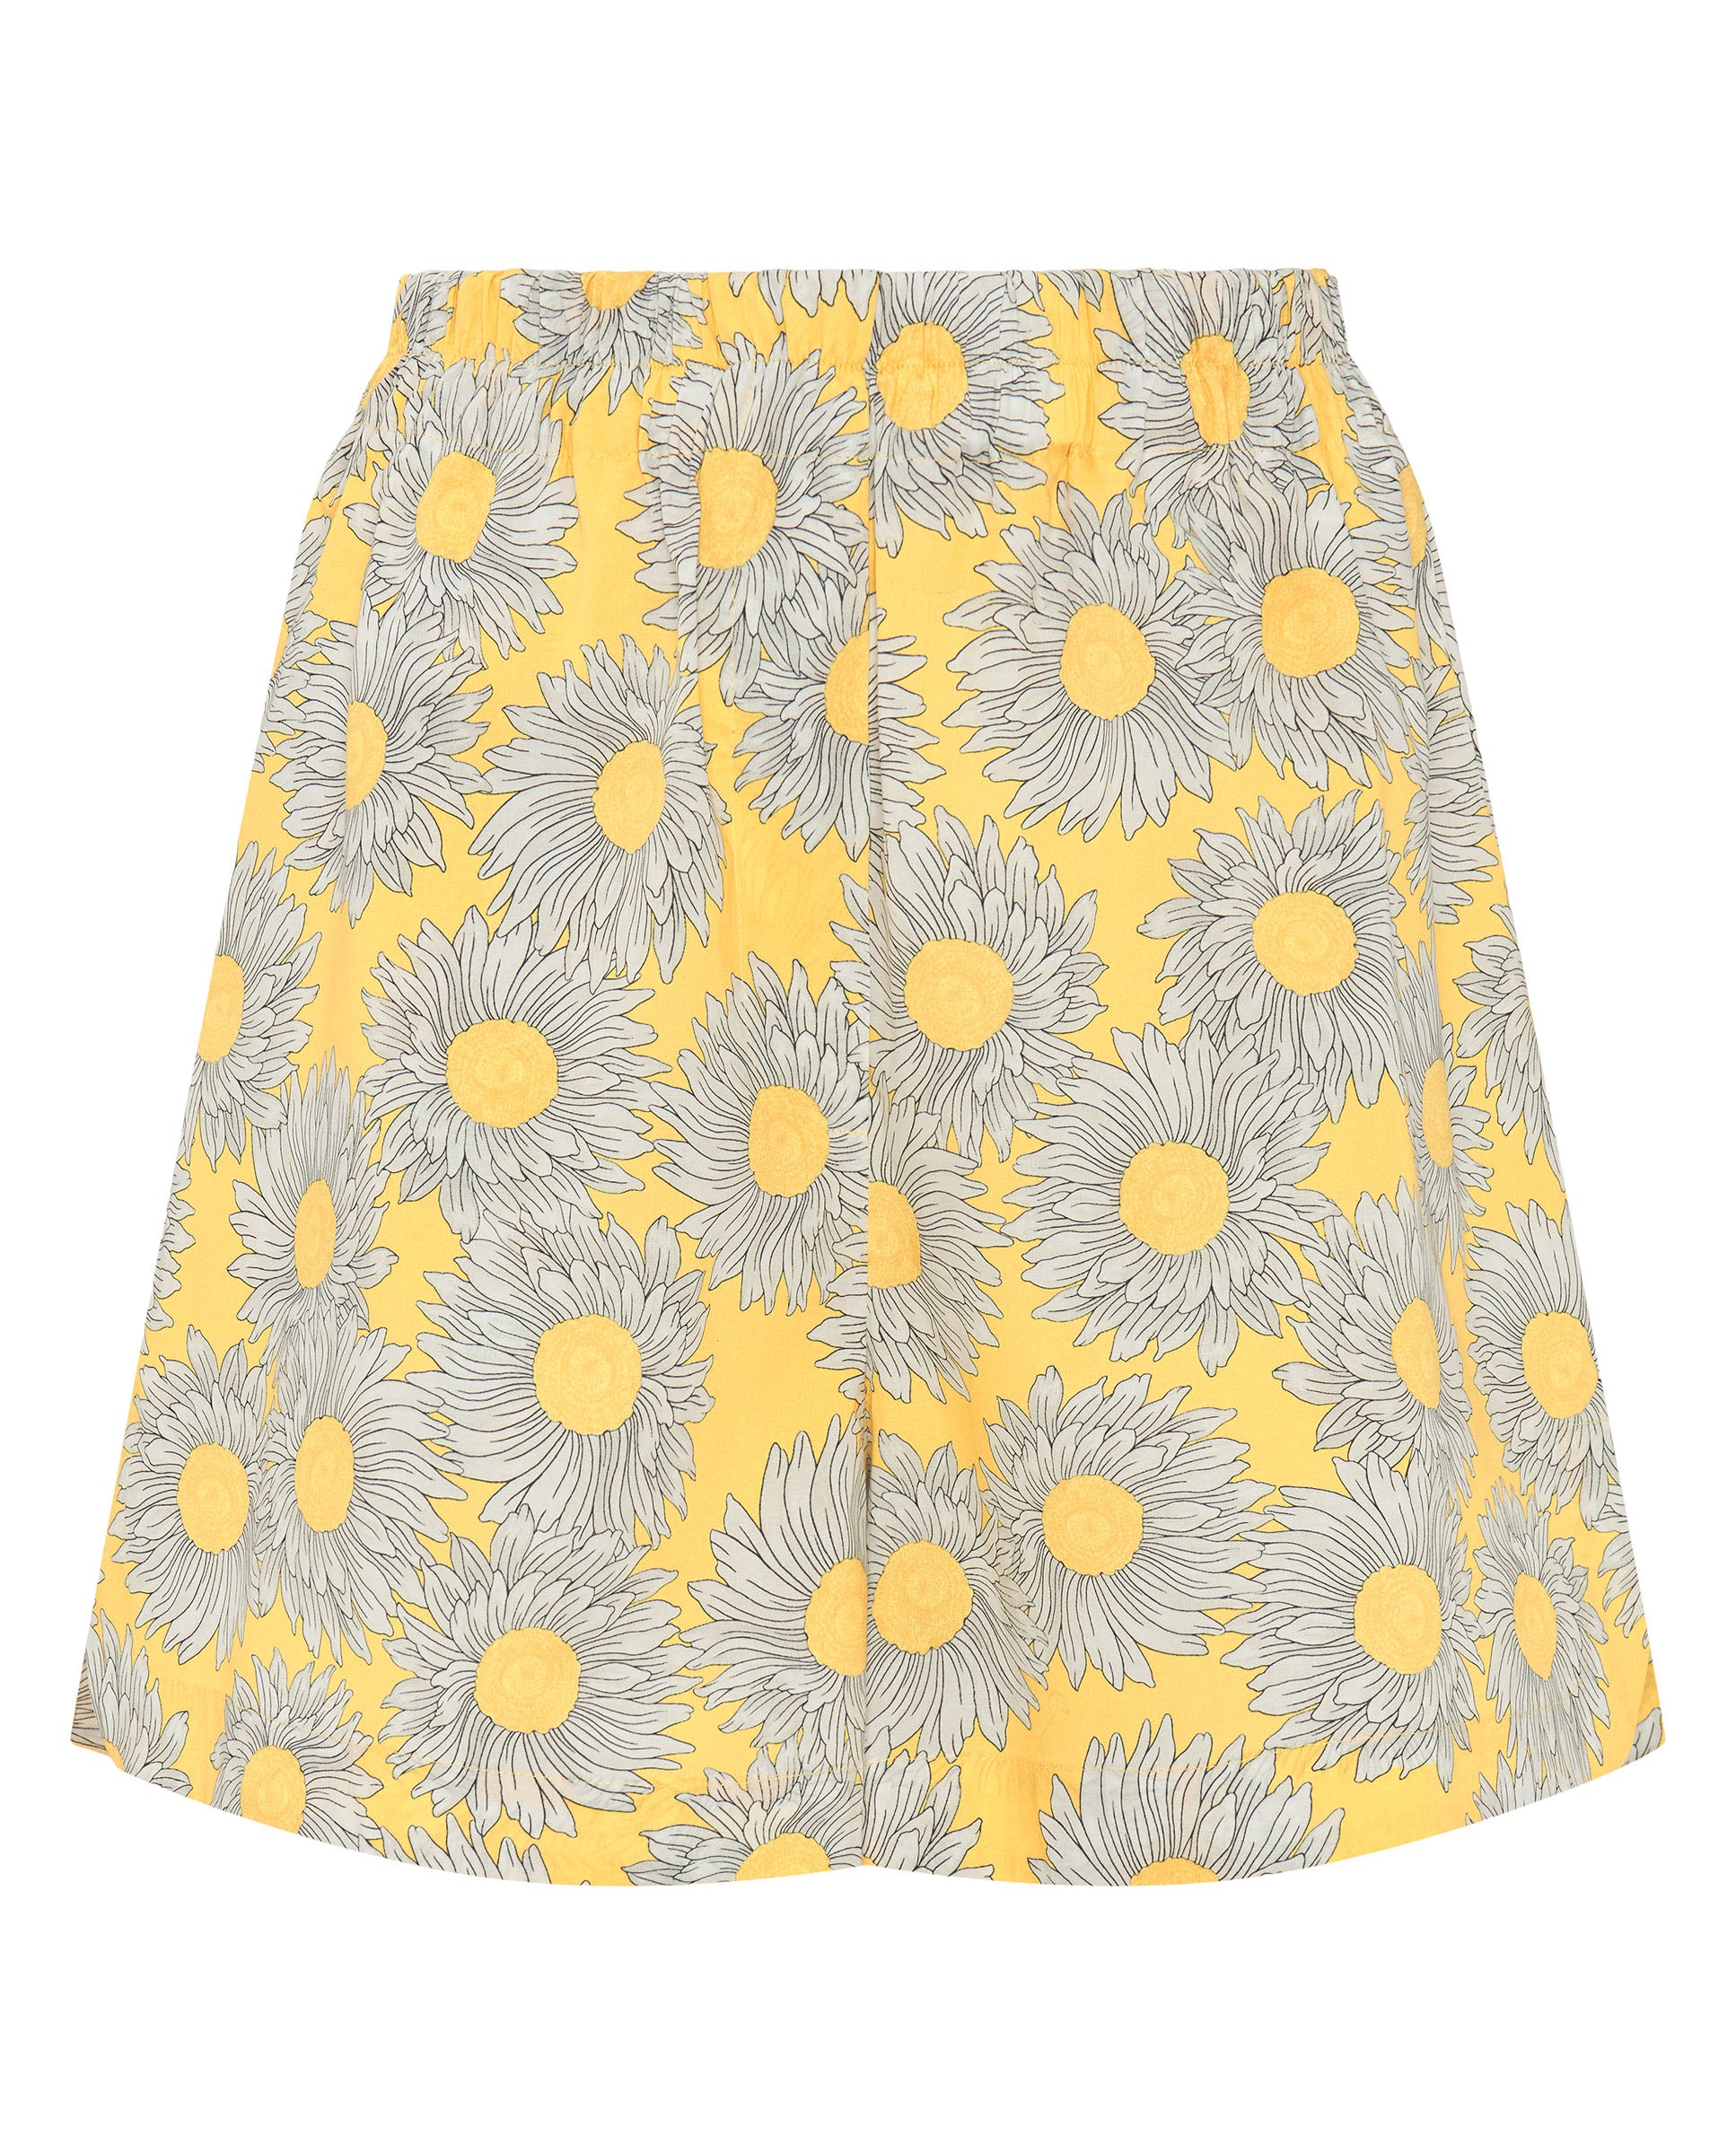 Short de algodón estampado floral amarillo by MIRT